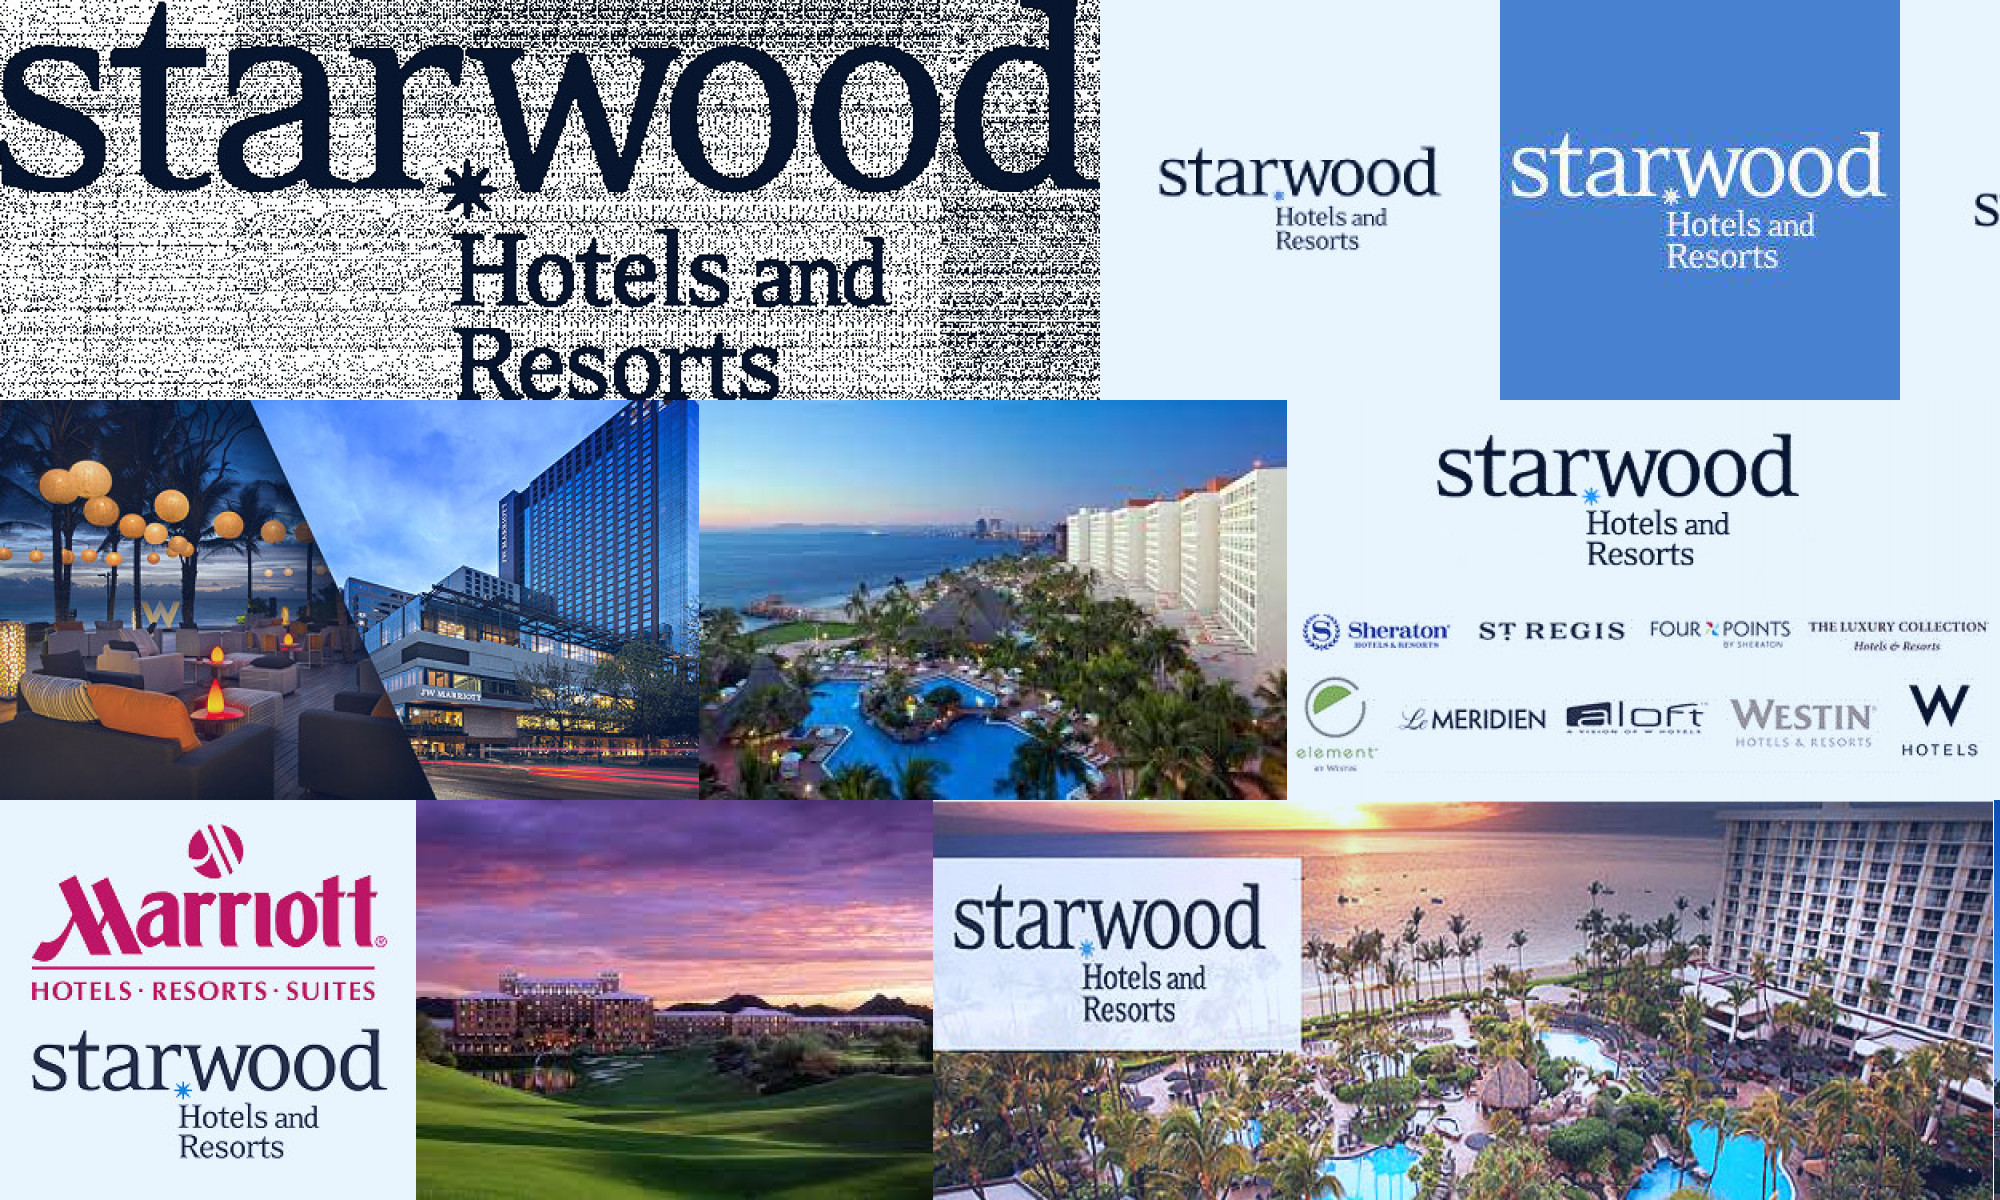 starwood hotels & resorts